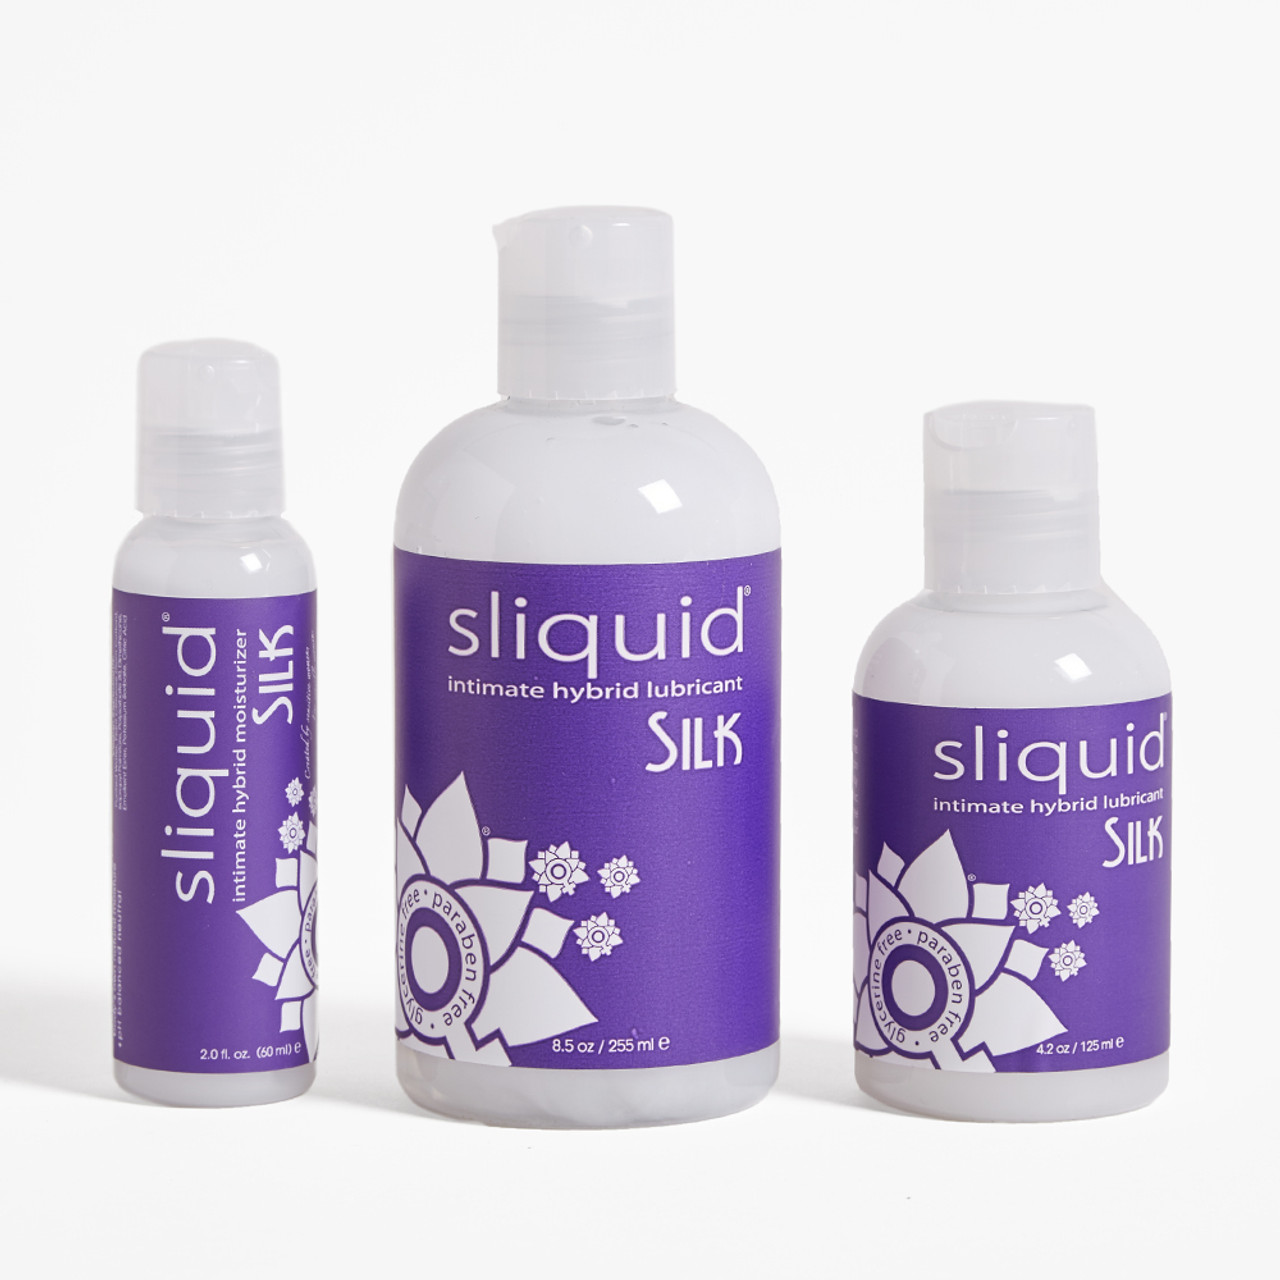 Sliquid Silk product line